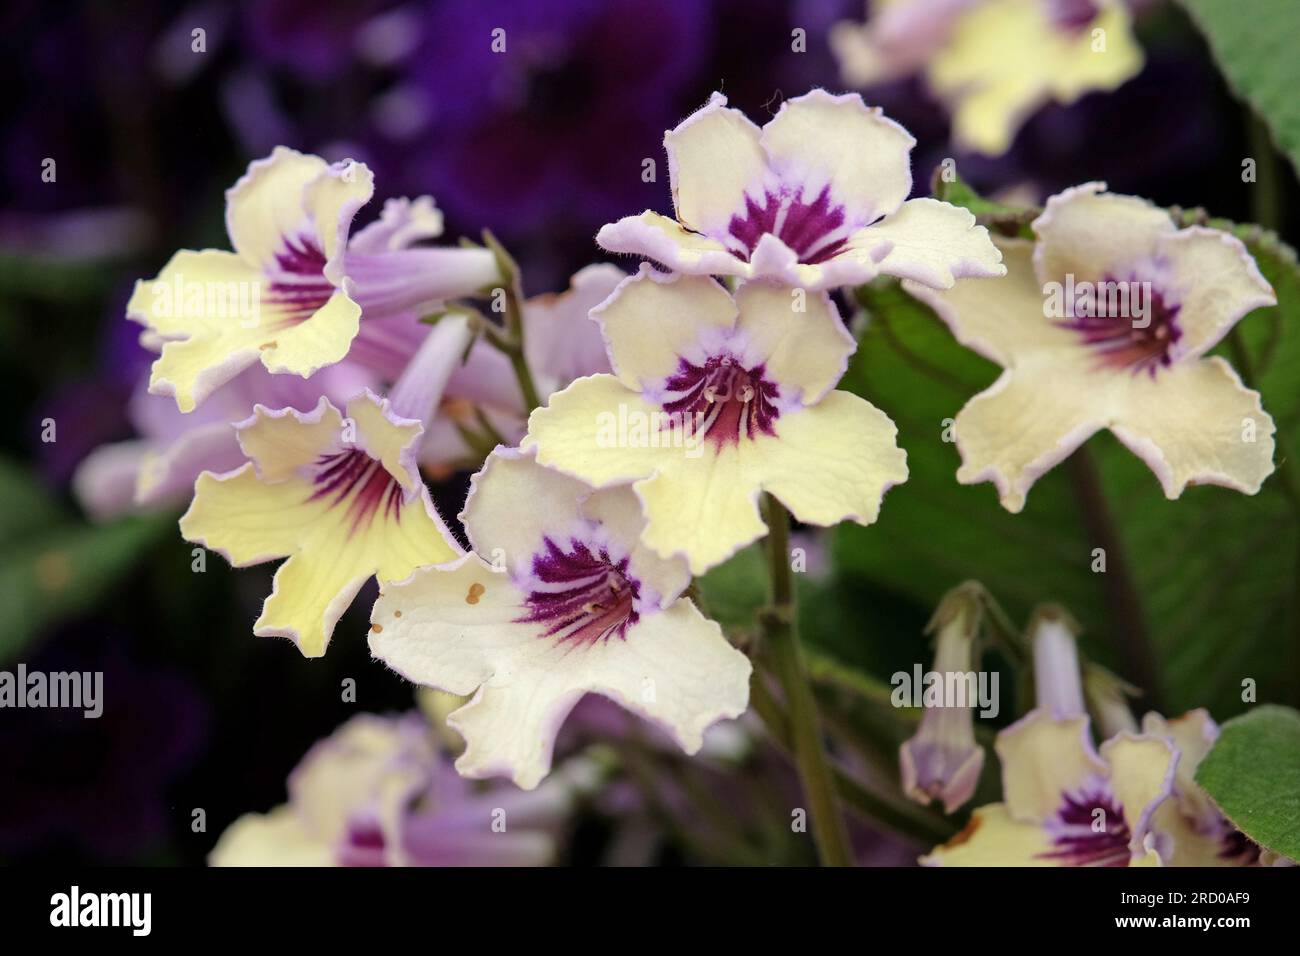 Streptocarpus, Cape primrose, 'Lemon Sorbet' in flower. Stock Photo